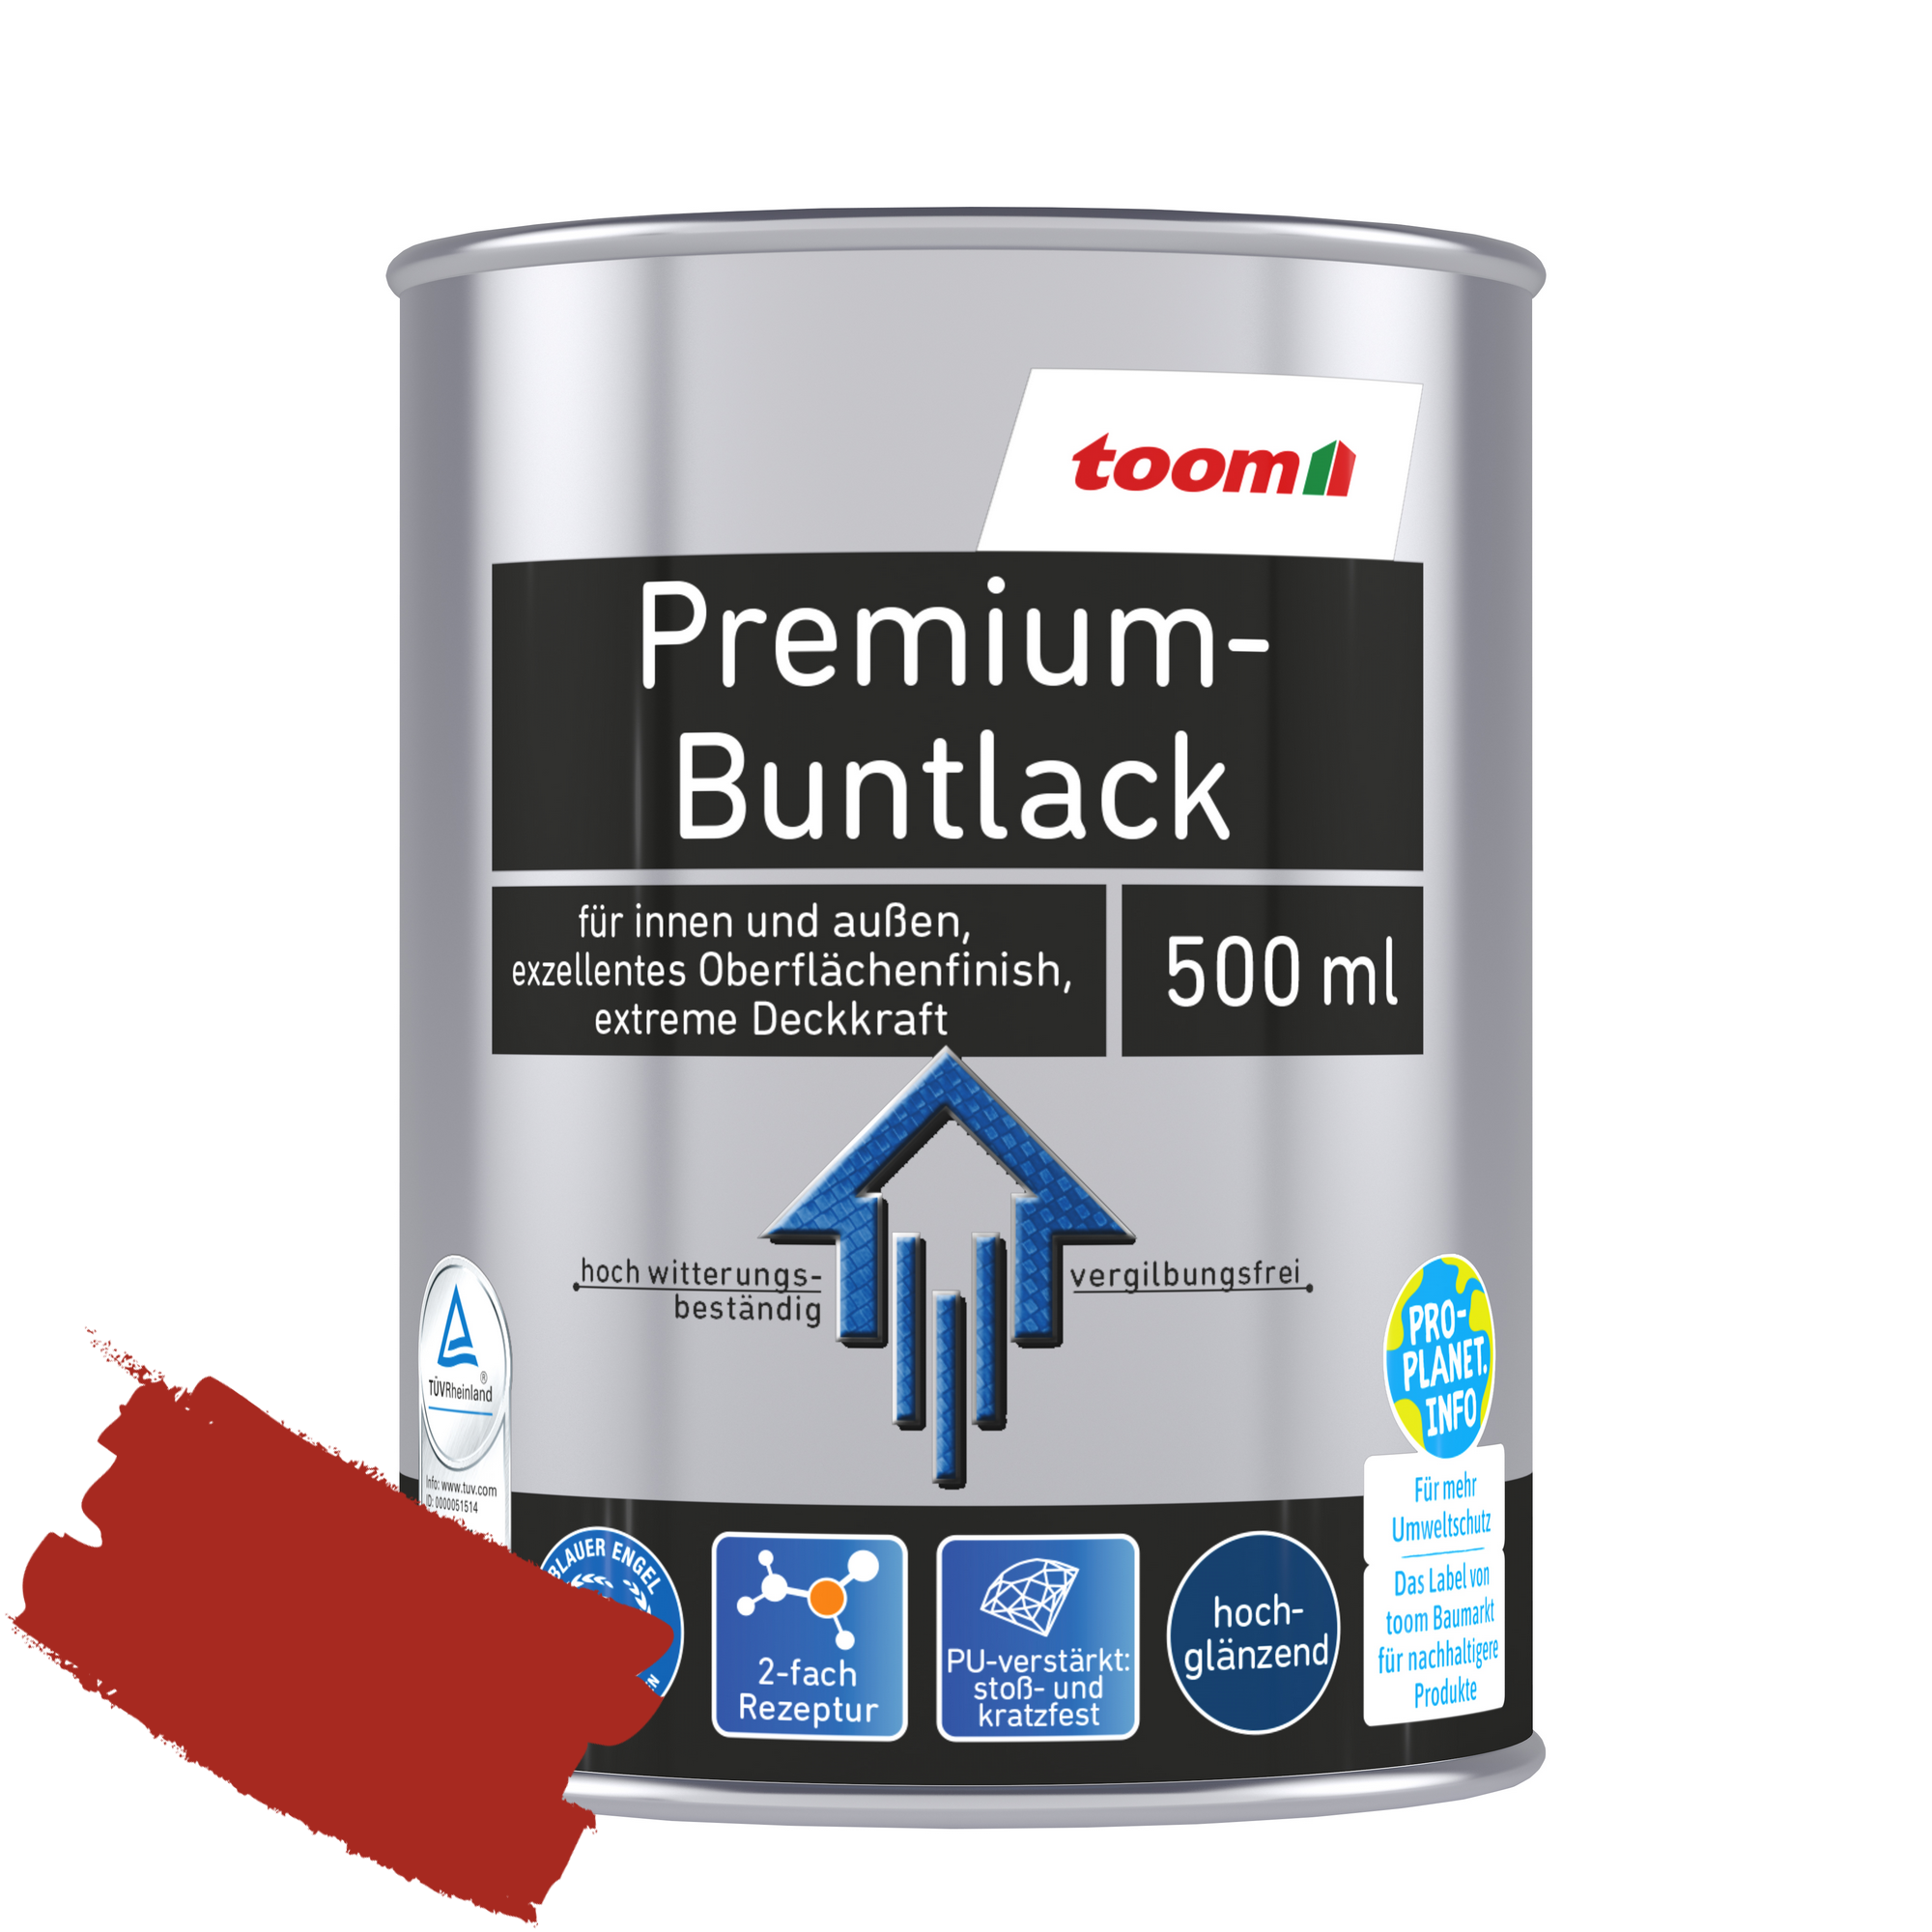 Premium-Buntlack feuerrot glänzend 500 ml + product picture